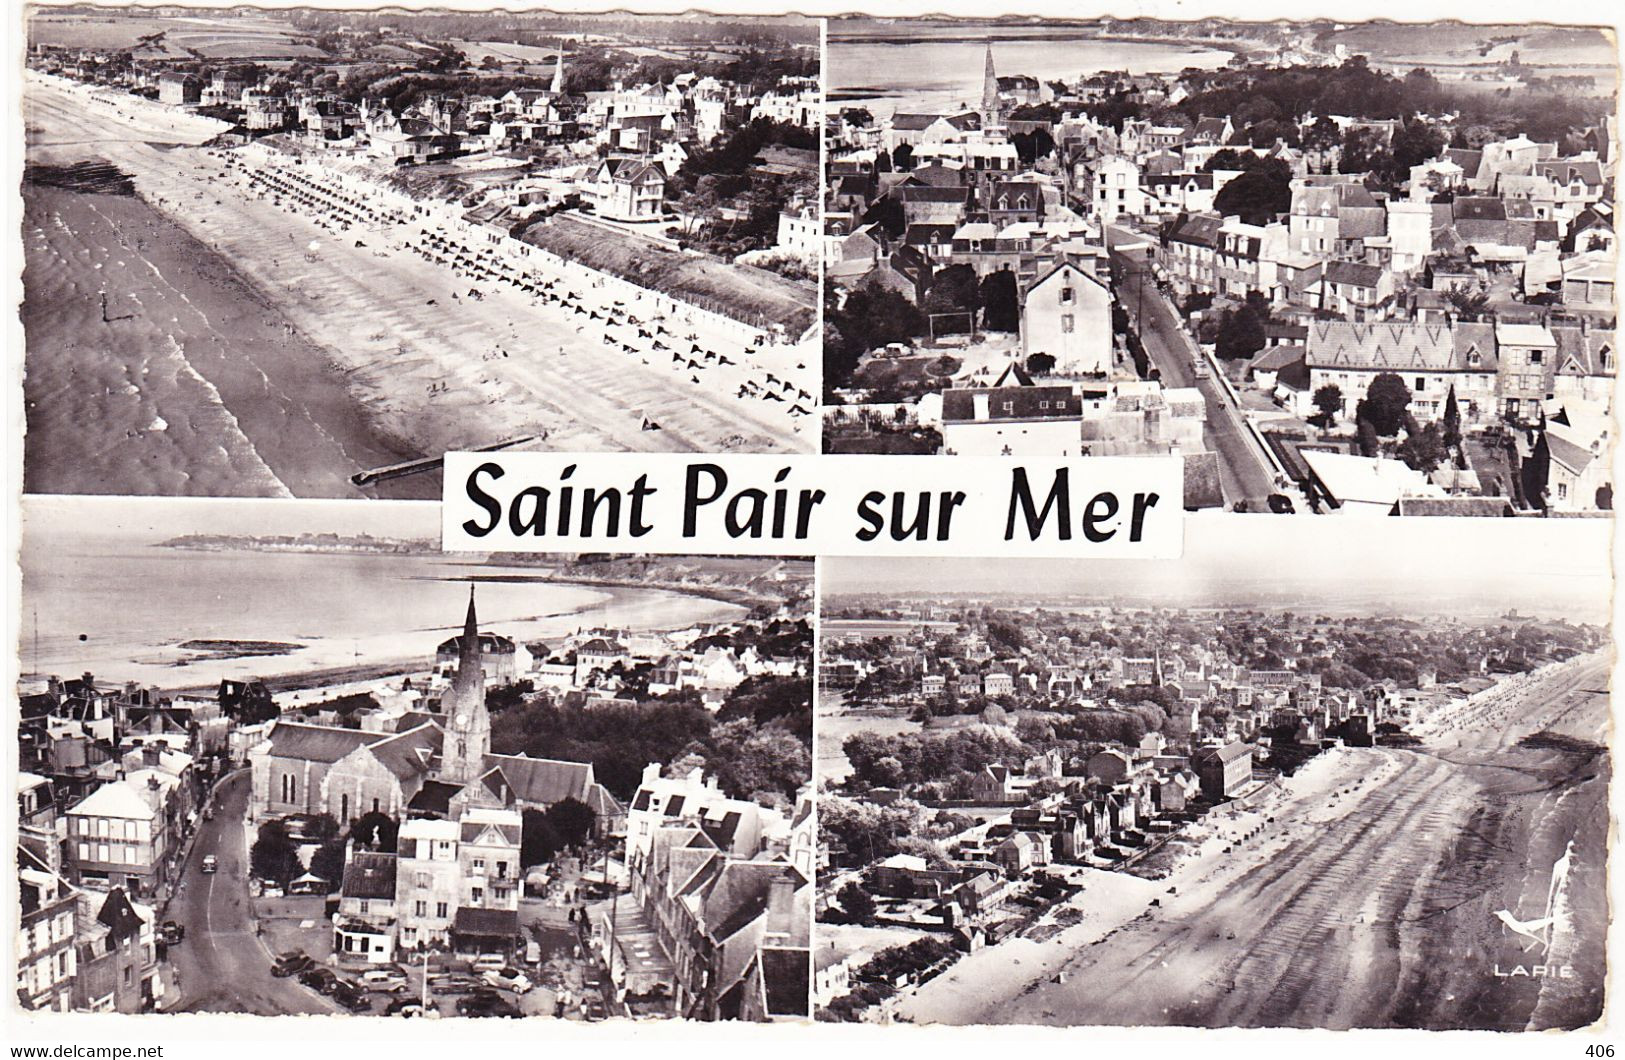 Lot de 20 cartes de la Manche - Saint-Pair-sur-Mer